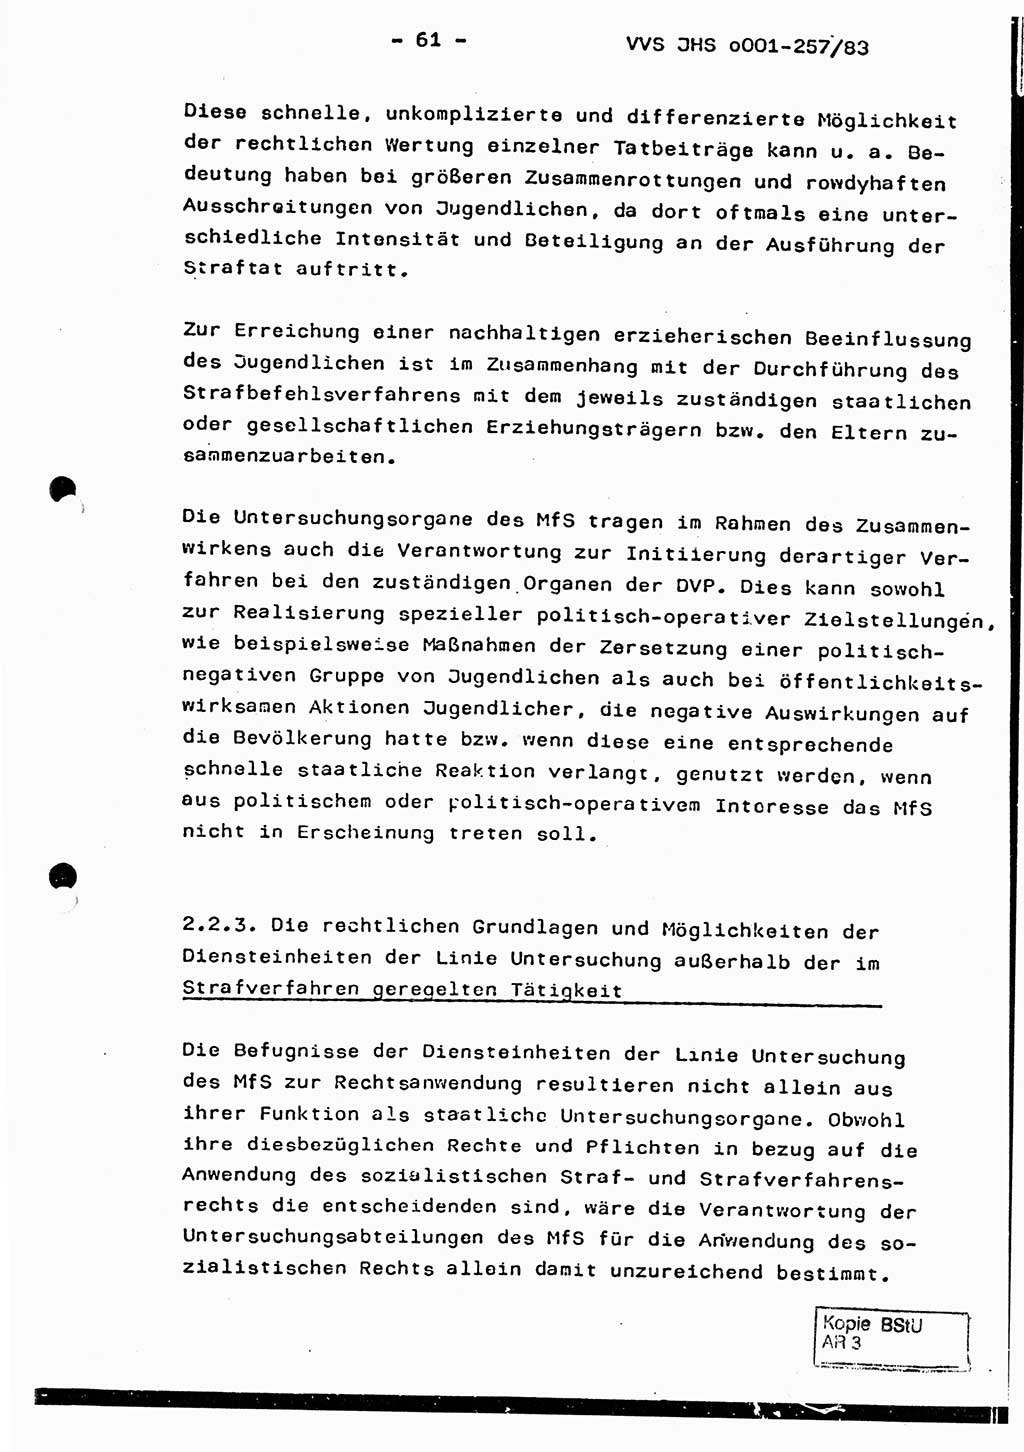 Dissertation, Oberst Helmut Lubas (BV Mdg.), Oberstleutnant Manfred Eschberger (HA IX), Oberleutnant Hans-Jürgen Ludwig (JHS), Ministerium für Staatssicherheit (MfS) [Deutsche Demokratische Republik (DDR)], Juristische Hochschule (JHS), Vertrauliche Verschlußsache (VVS) o001-257/83, Potsdam 1983, Seite 61 (Diss. MfS DDR JHS VVS o001-257/83 1983, S. 61)